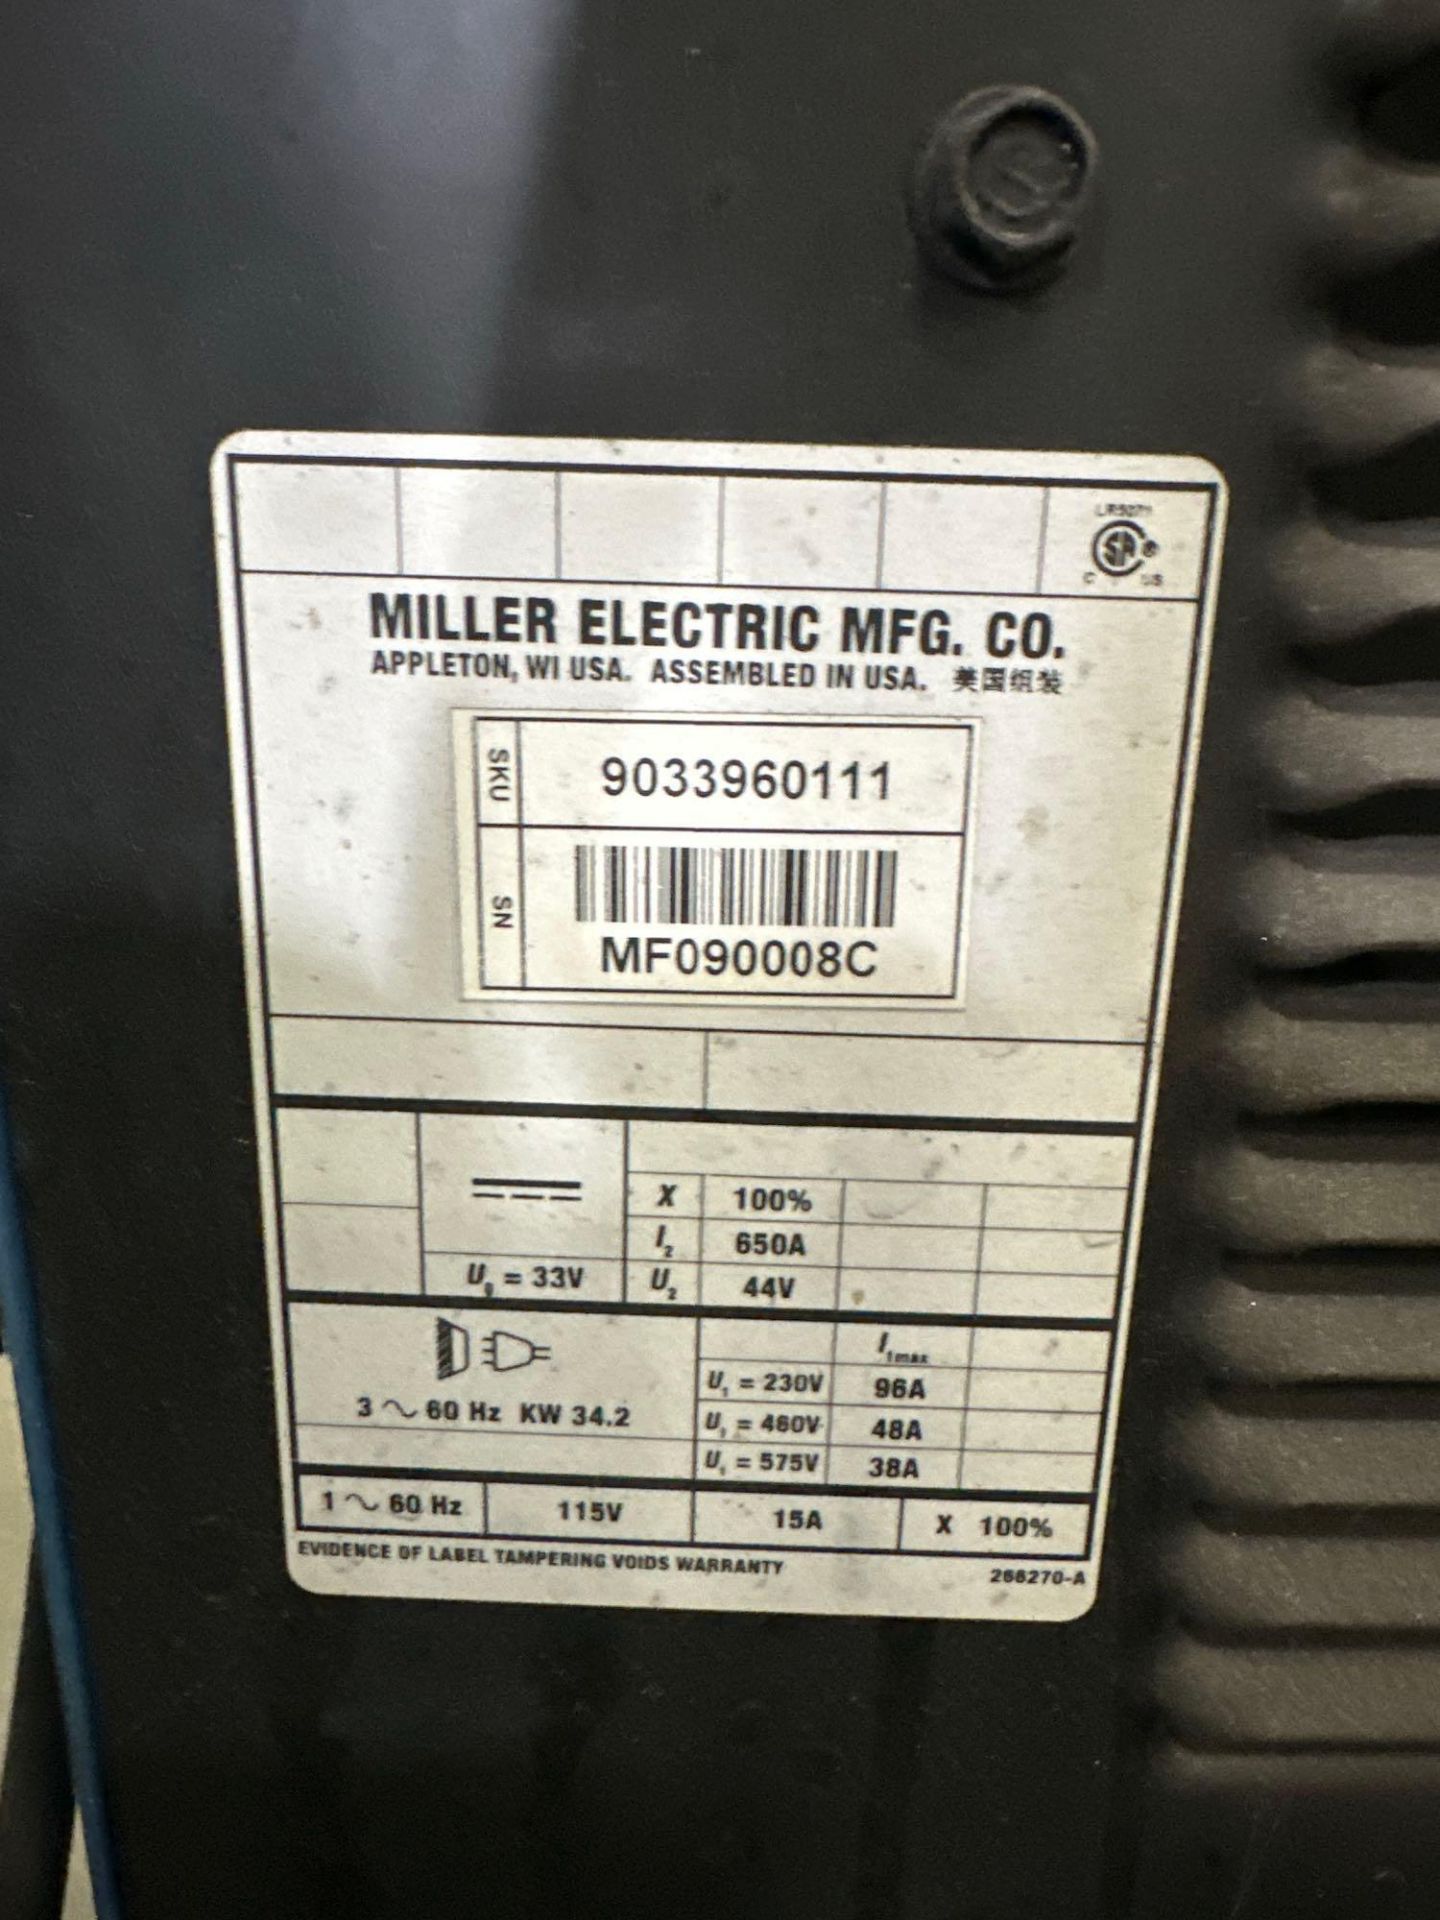 Miller Deltaweld 652 Mig Welder, 38 Volts, 450 Amps, 44 Max OCV, Includes: Miller S-74 D Wire Feeder - Image 8 of 12